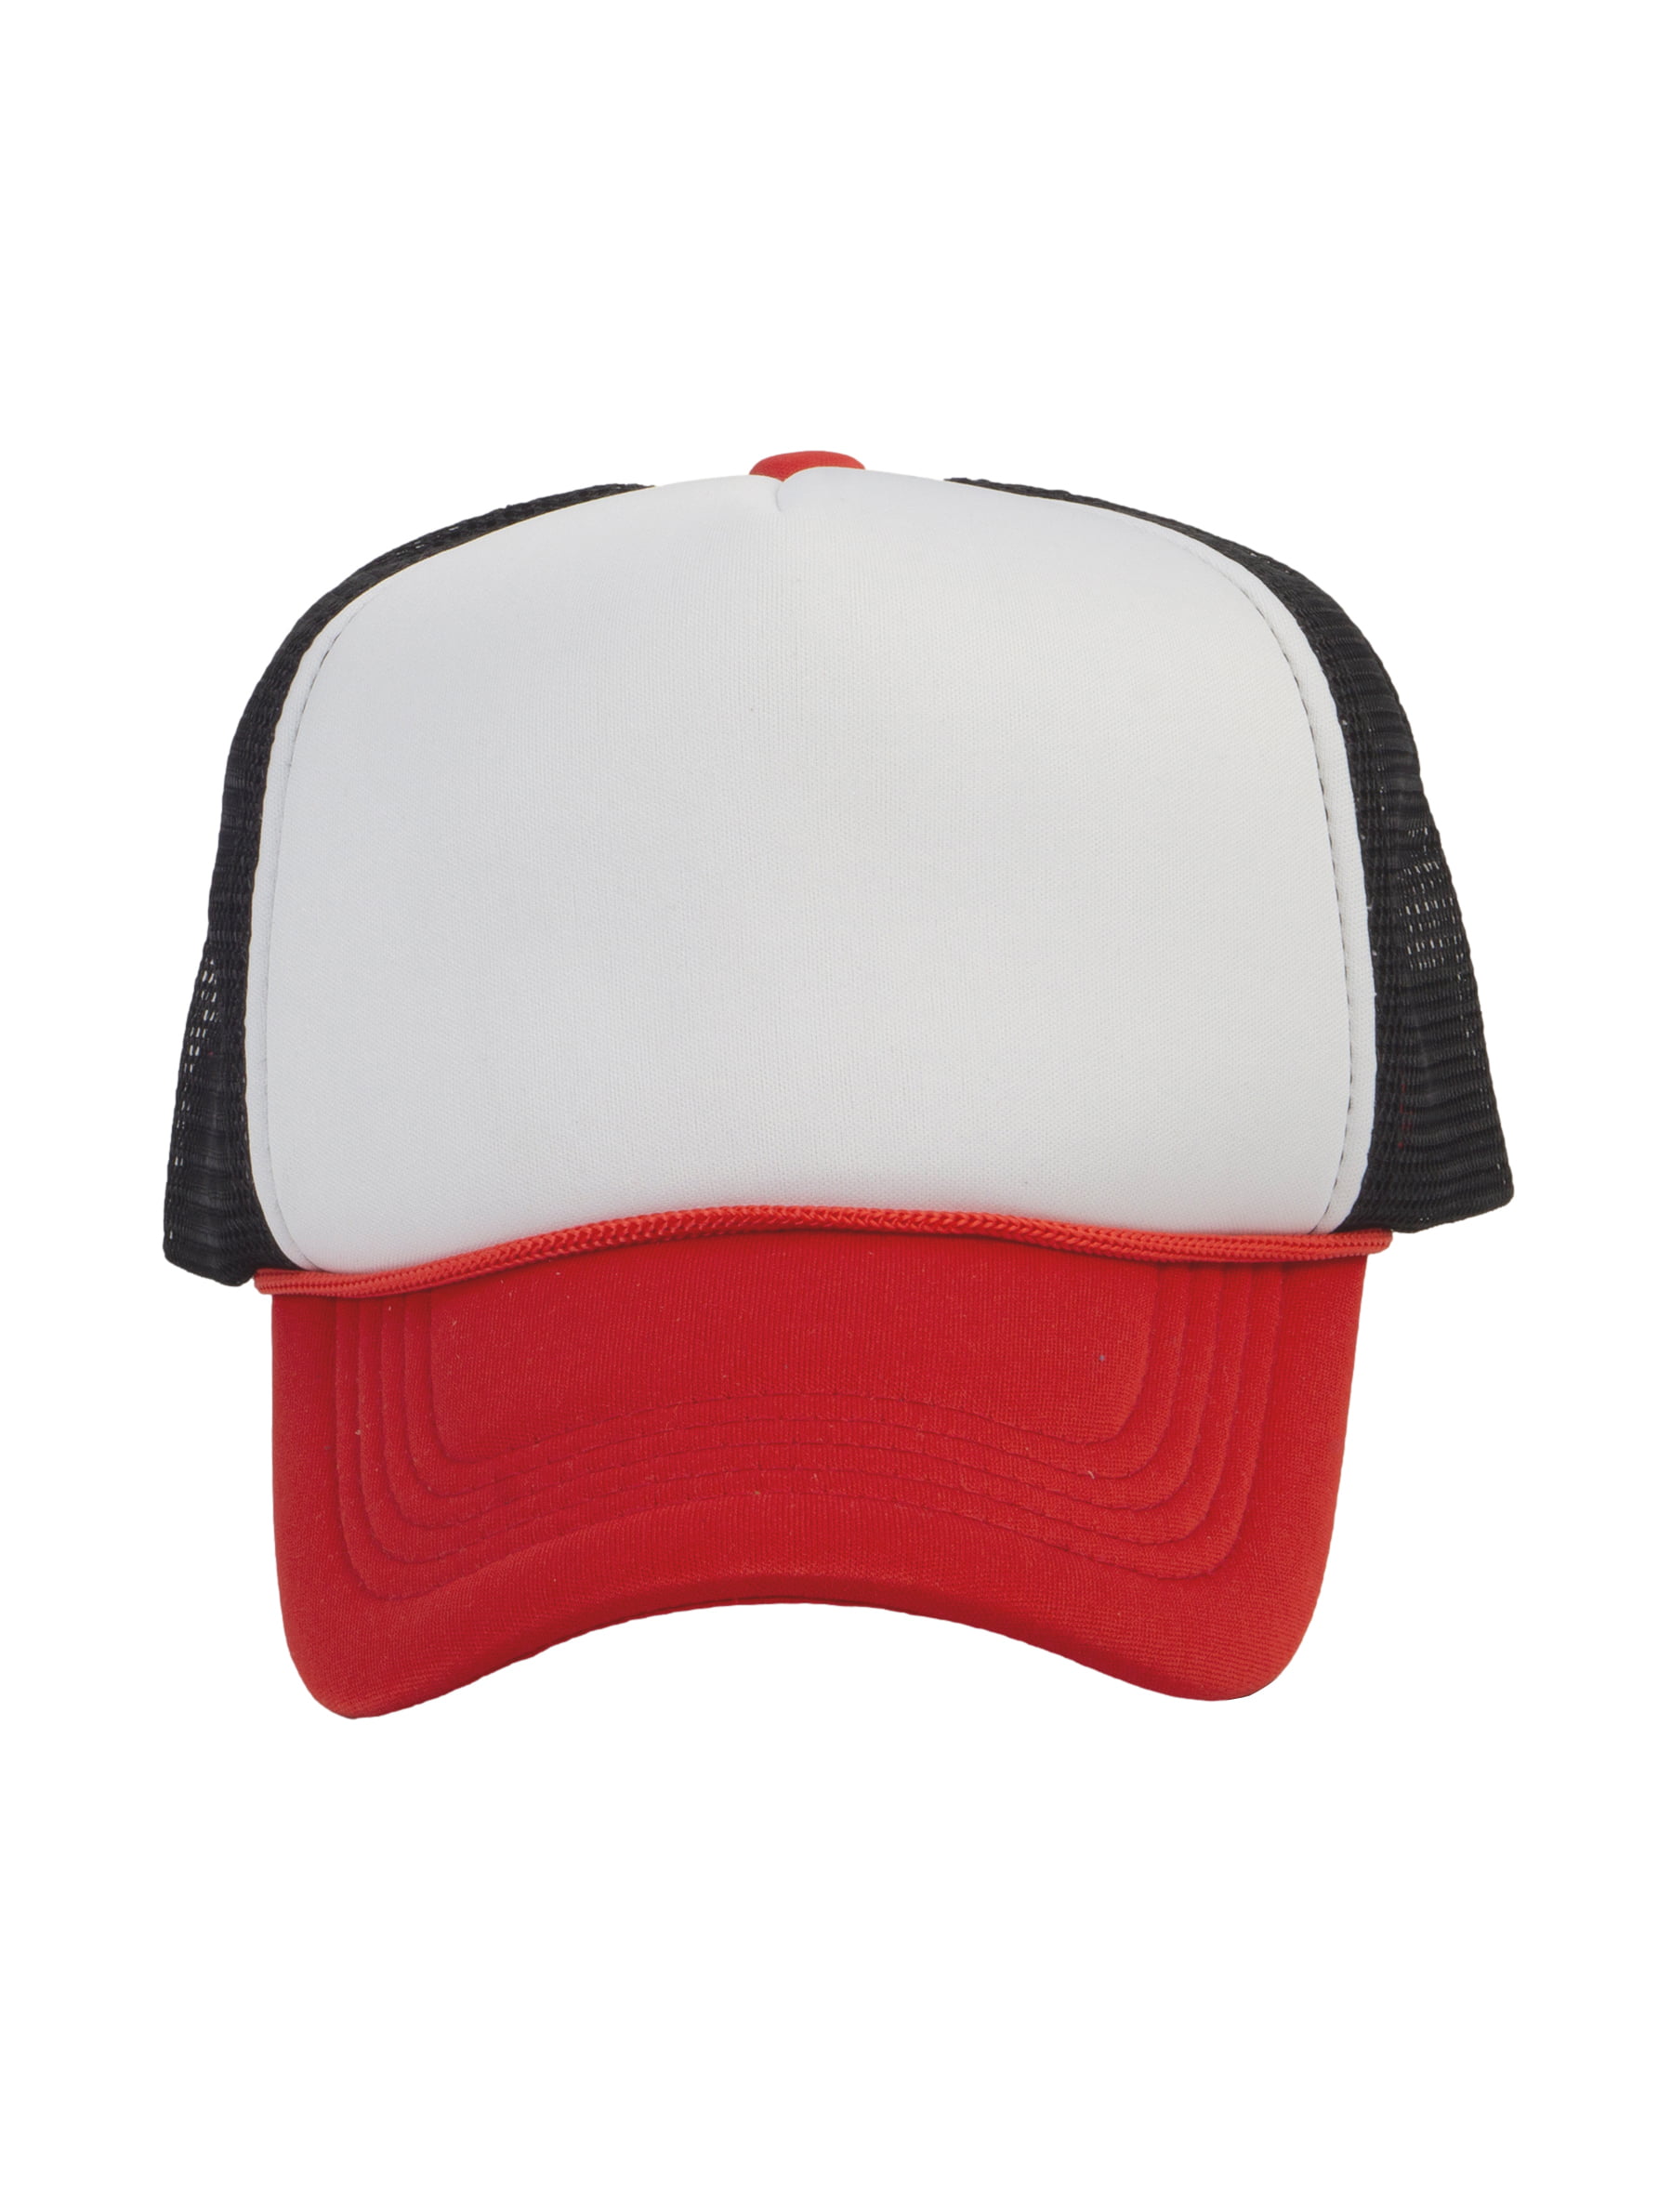 Top Headwear Men's Blank Rope Trucker Foam Mesh Plain Hats, 2PC White/Black  